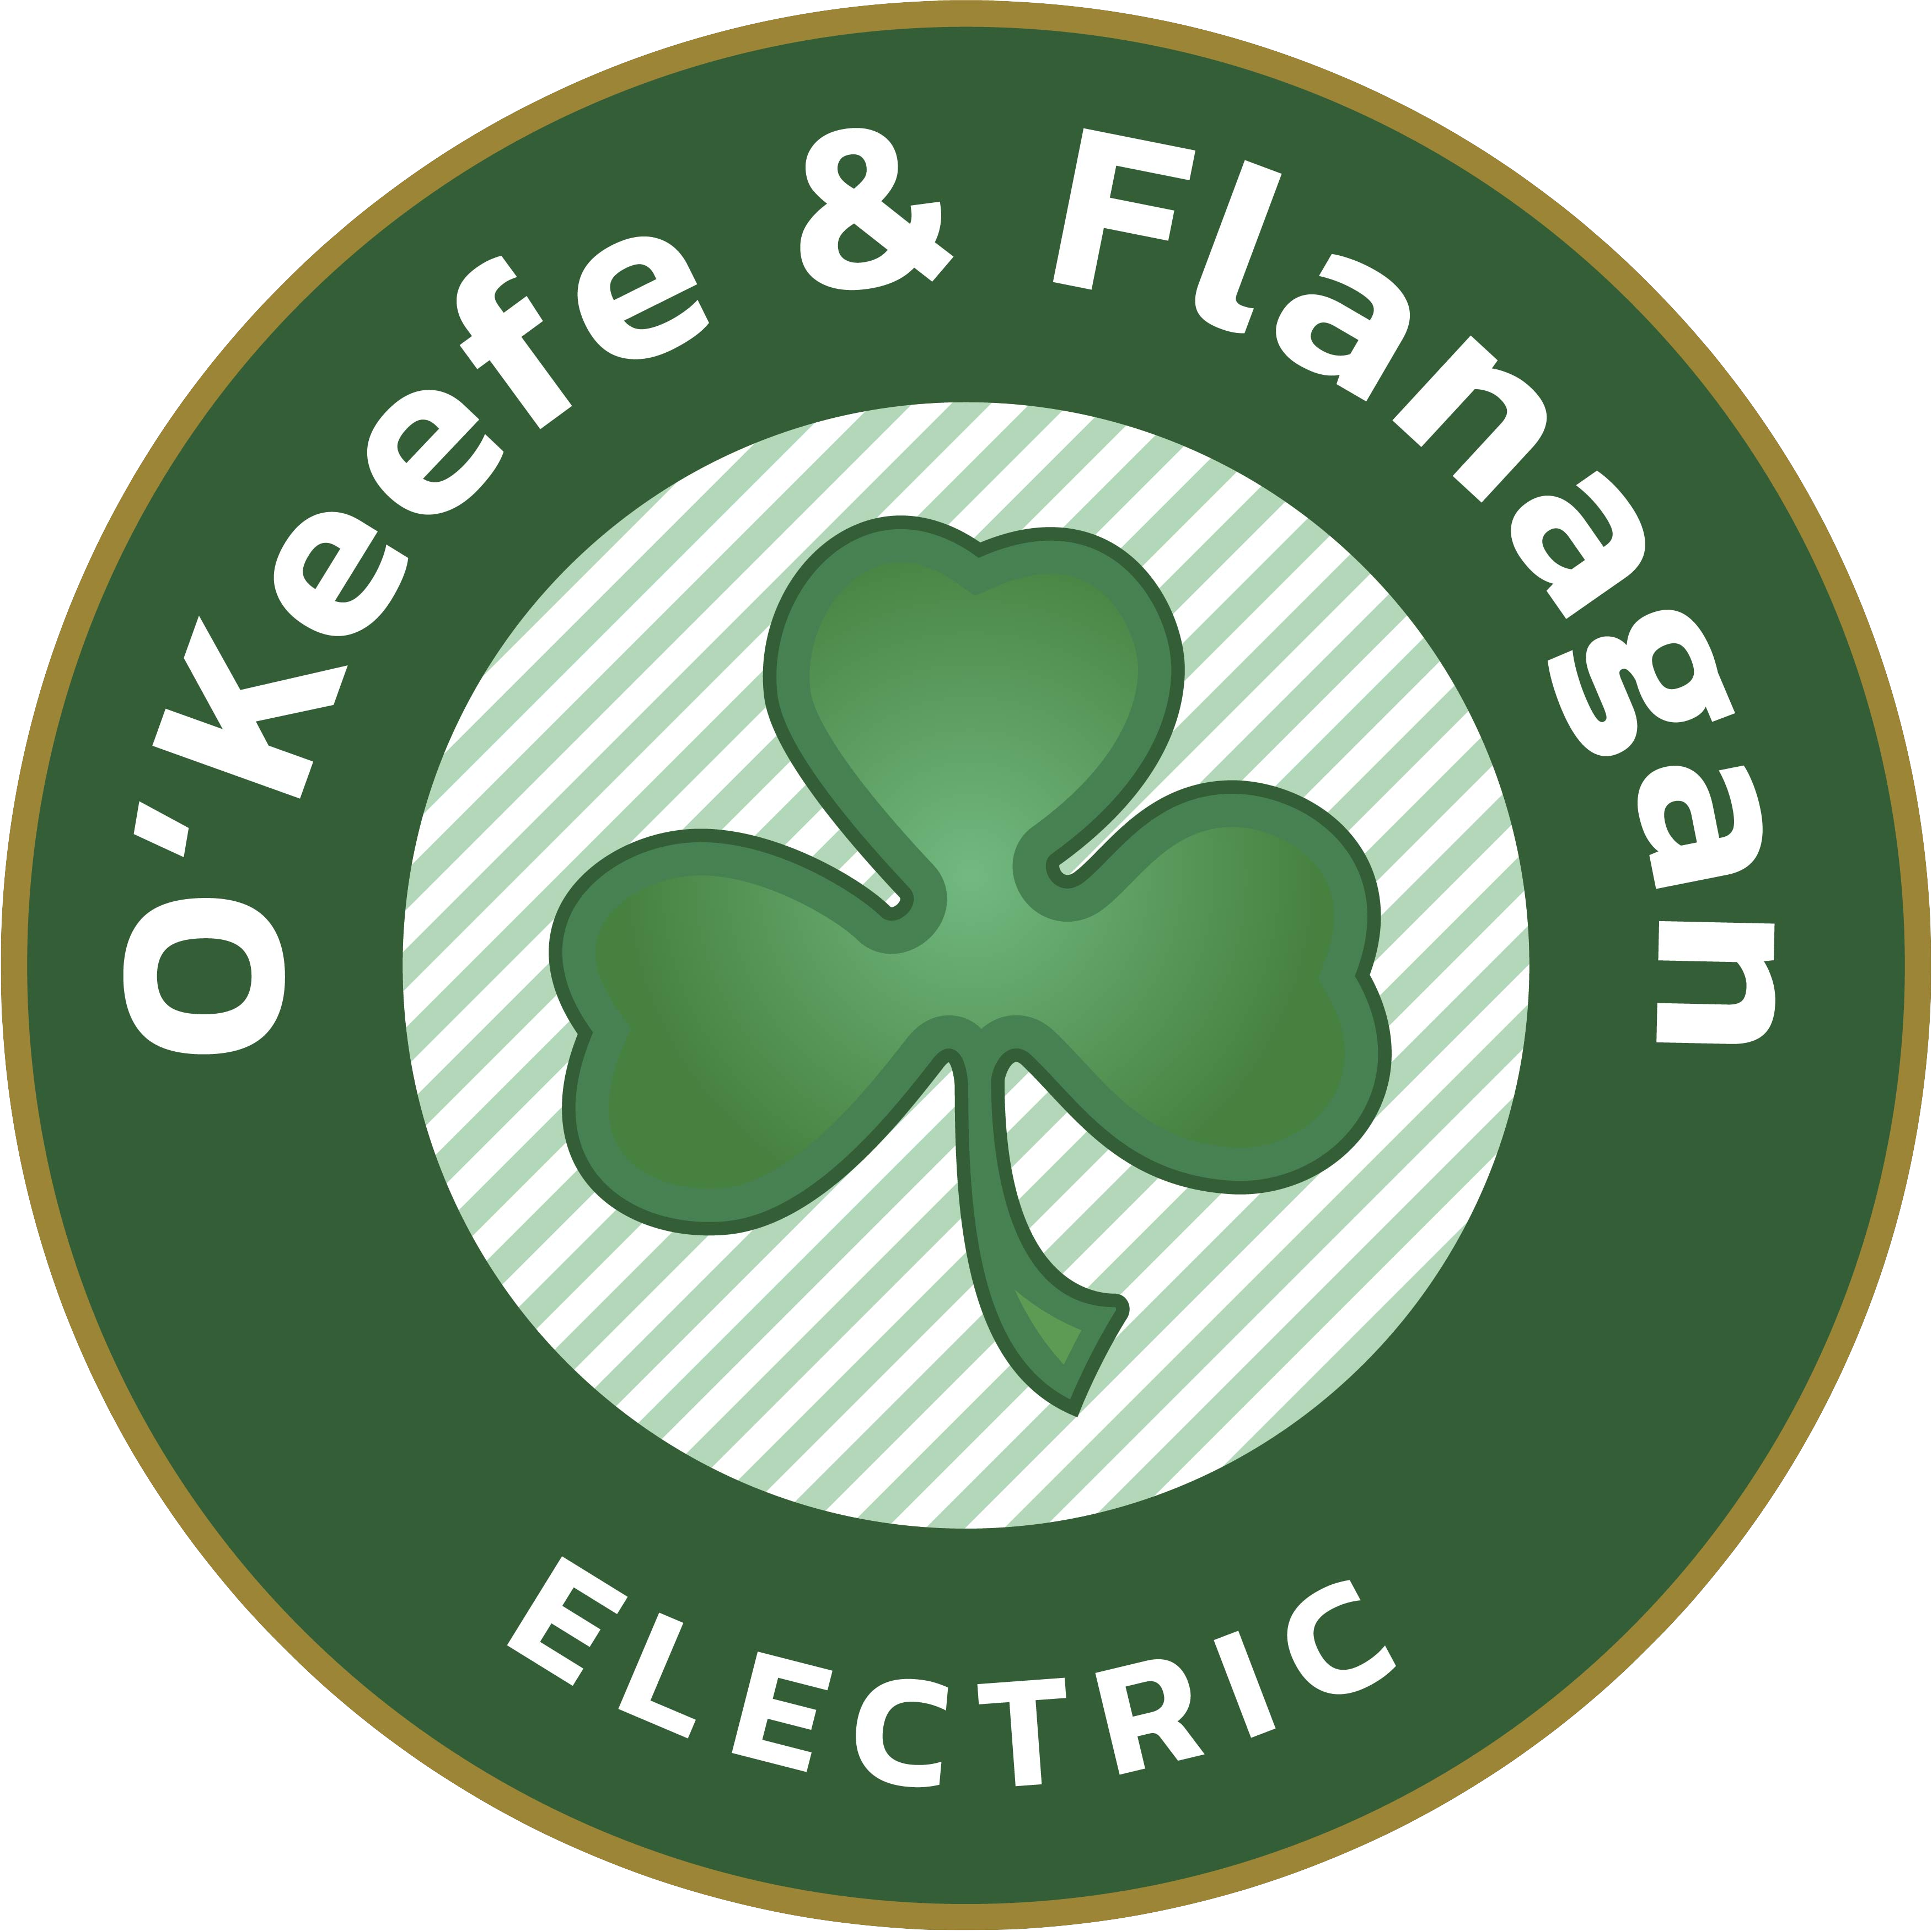 O'Keefe & Flanagan Electric, LLC logo